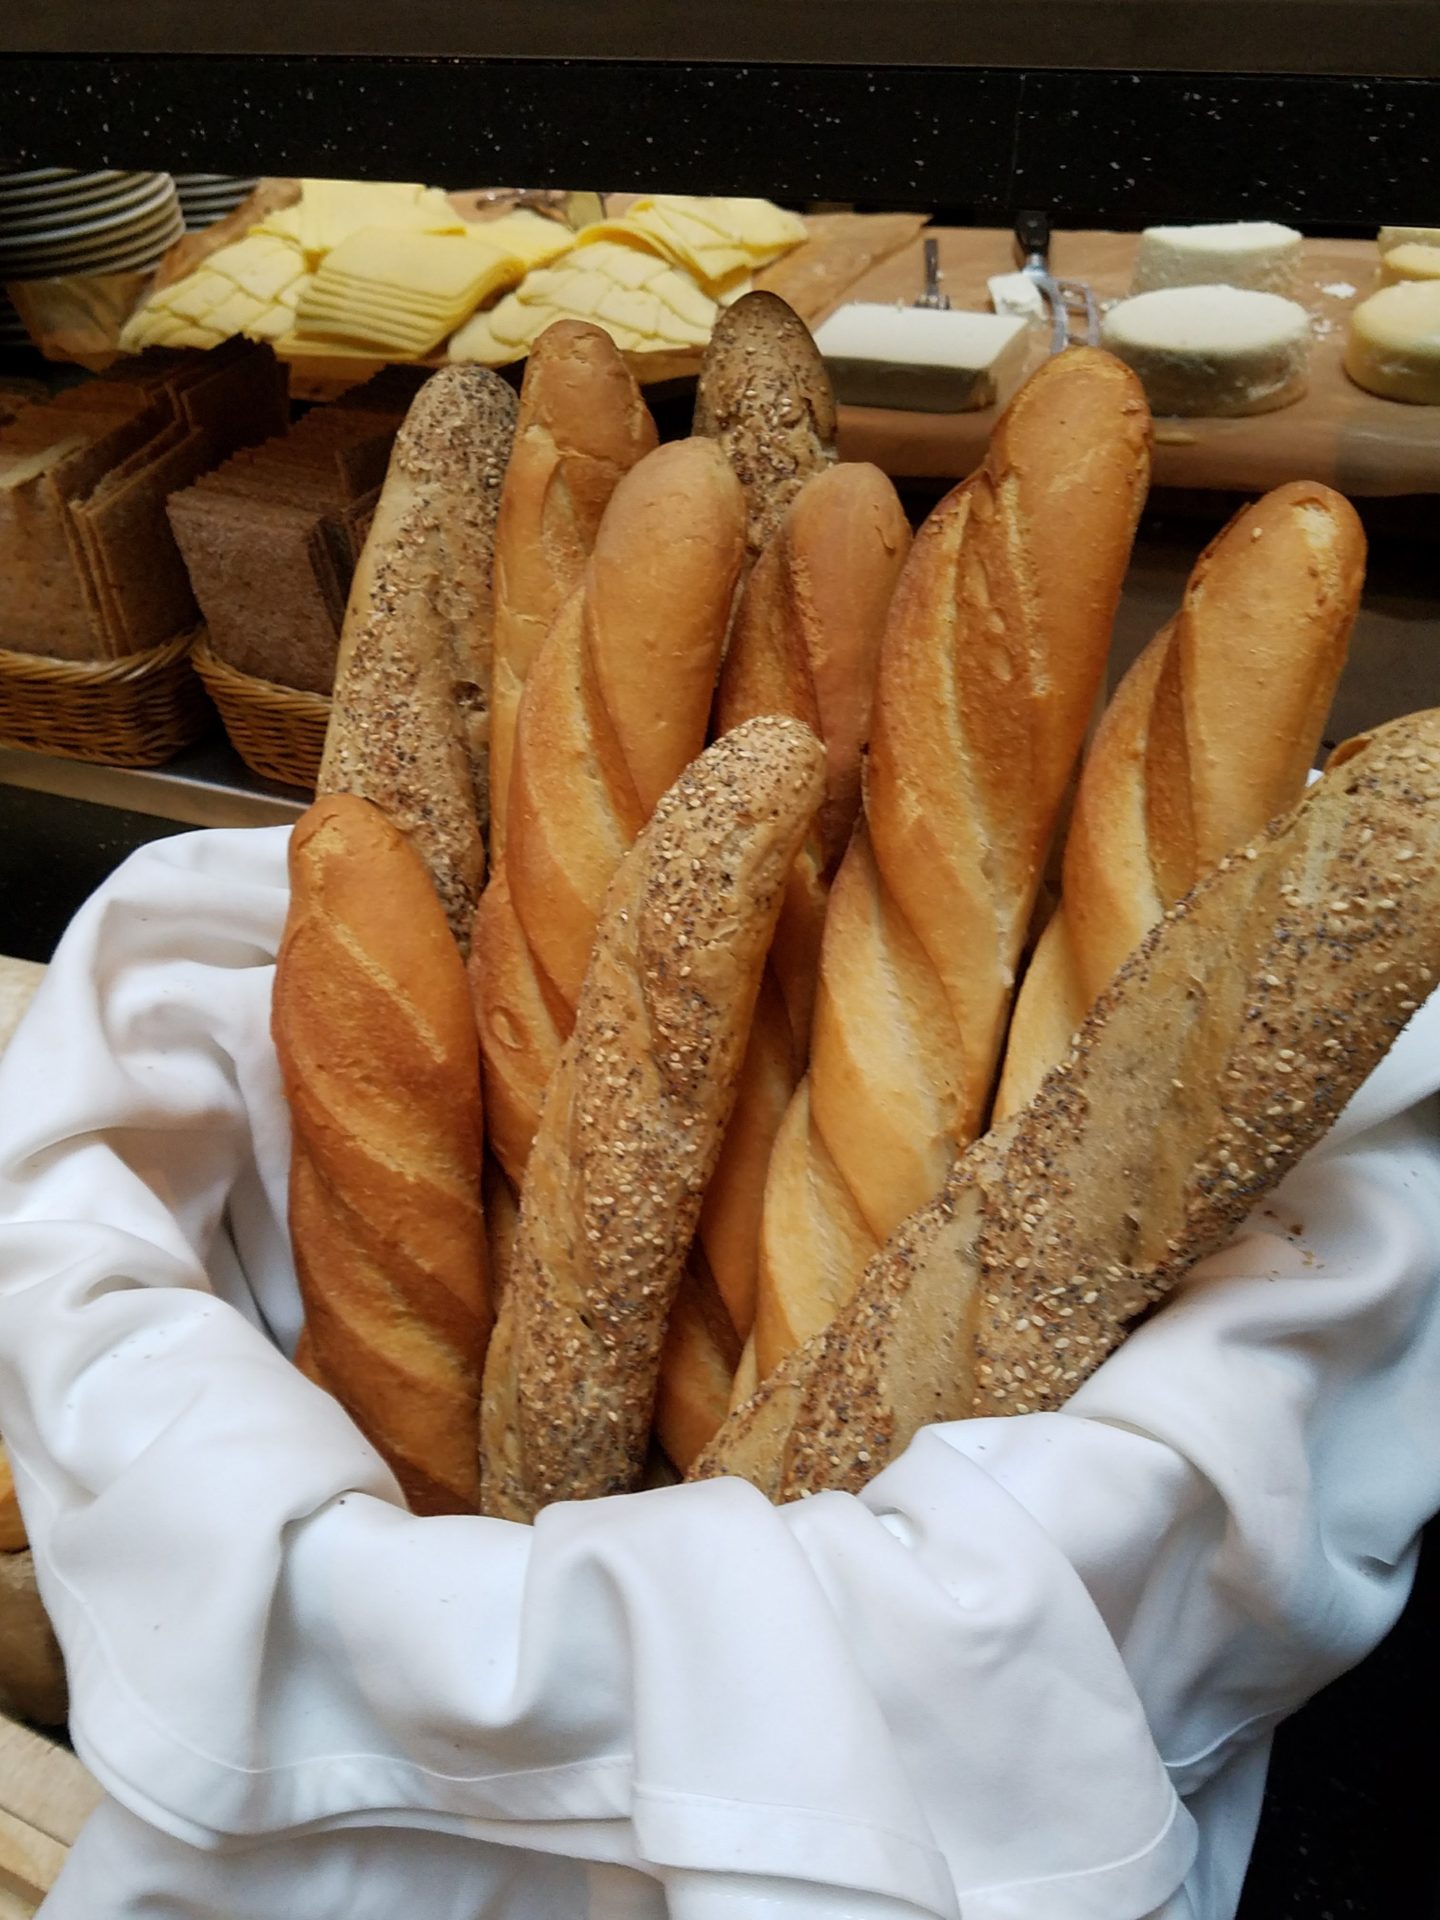 a basket of bread in a bakery